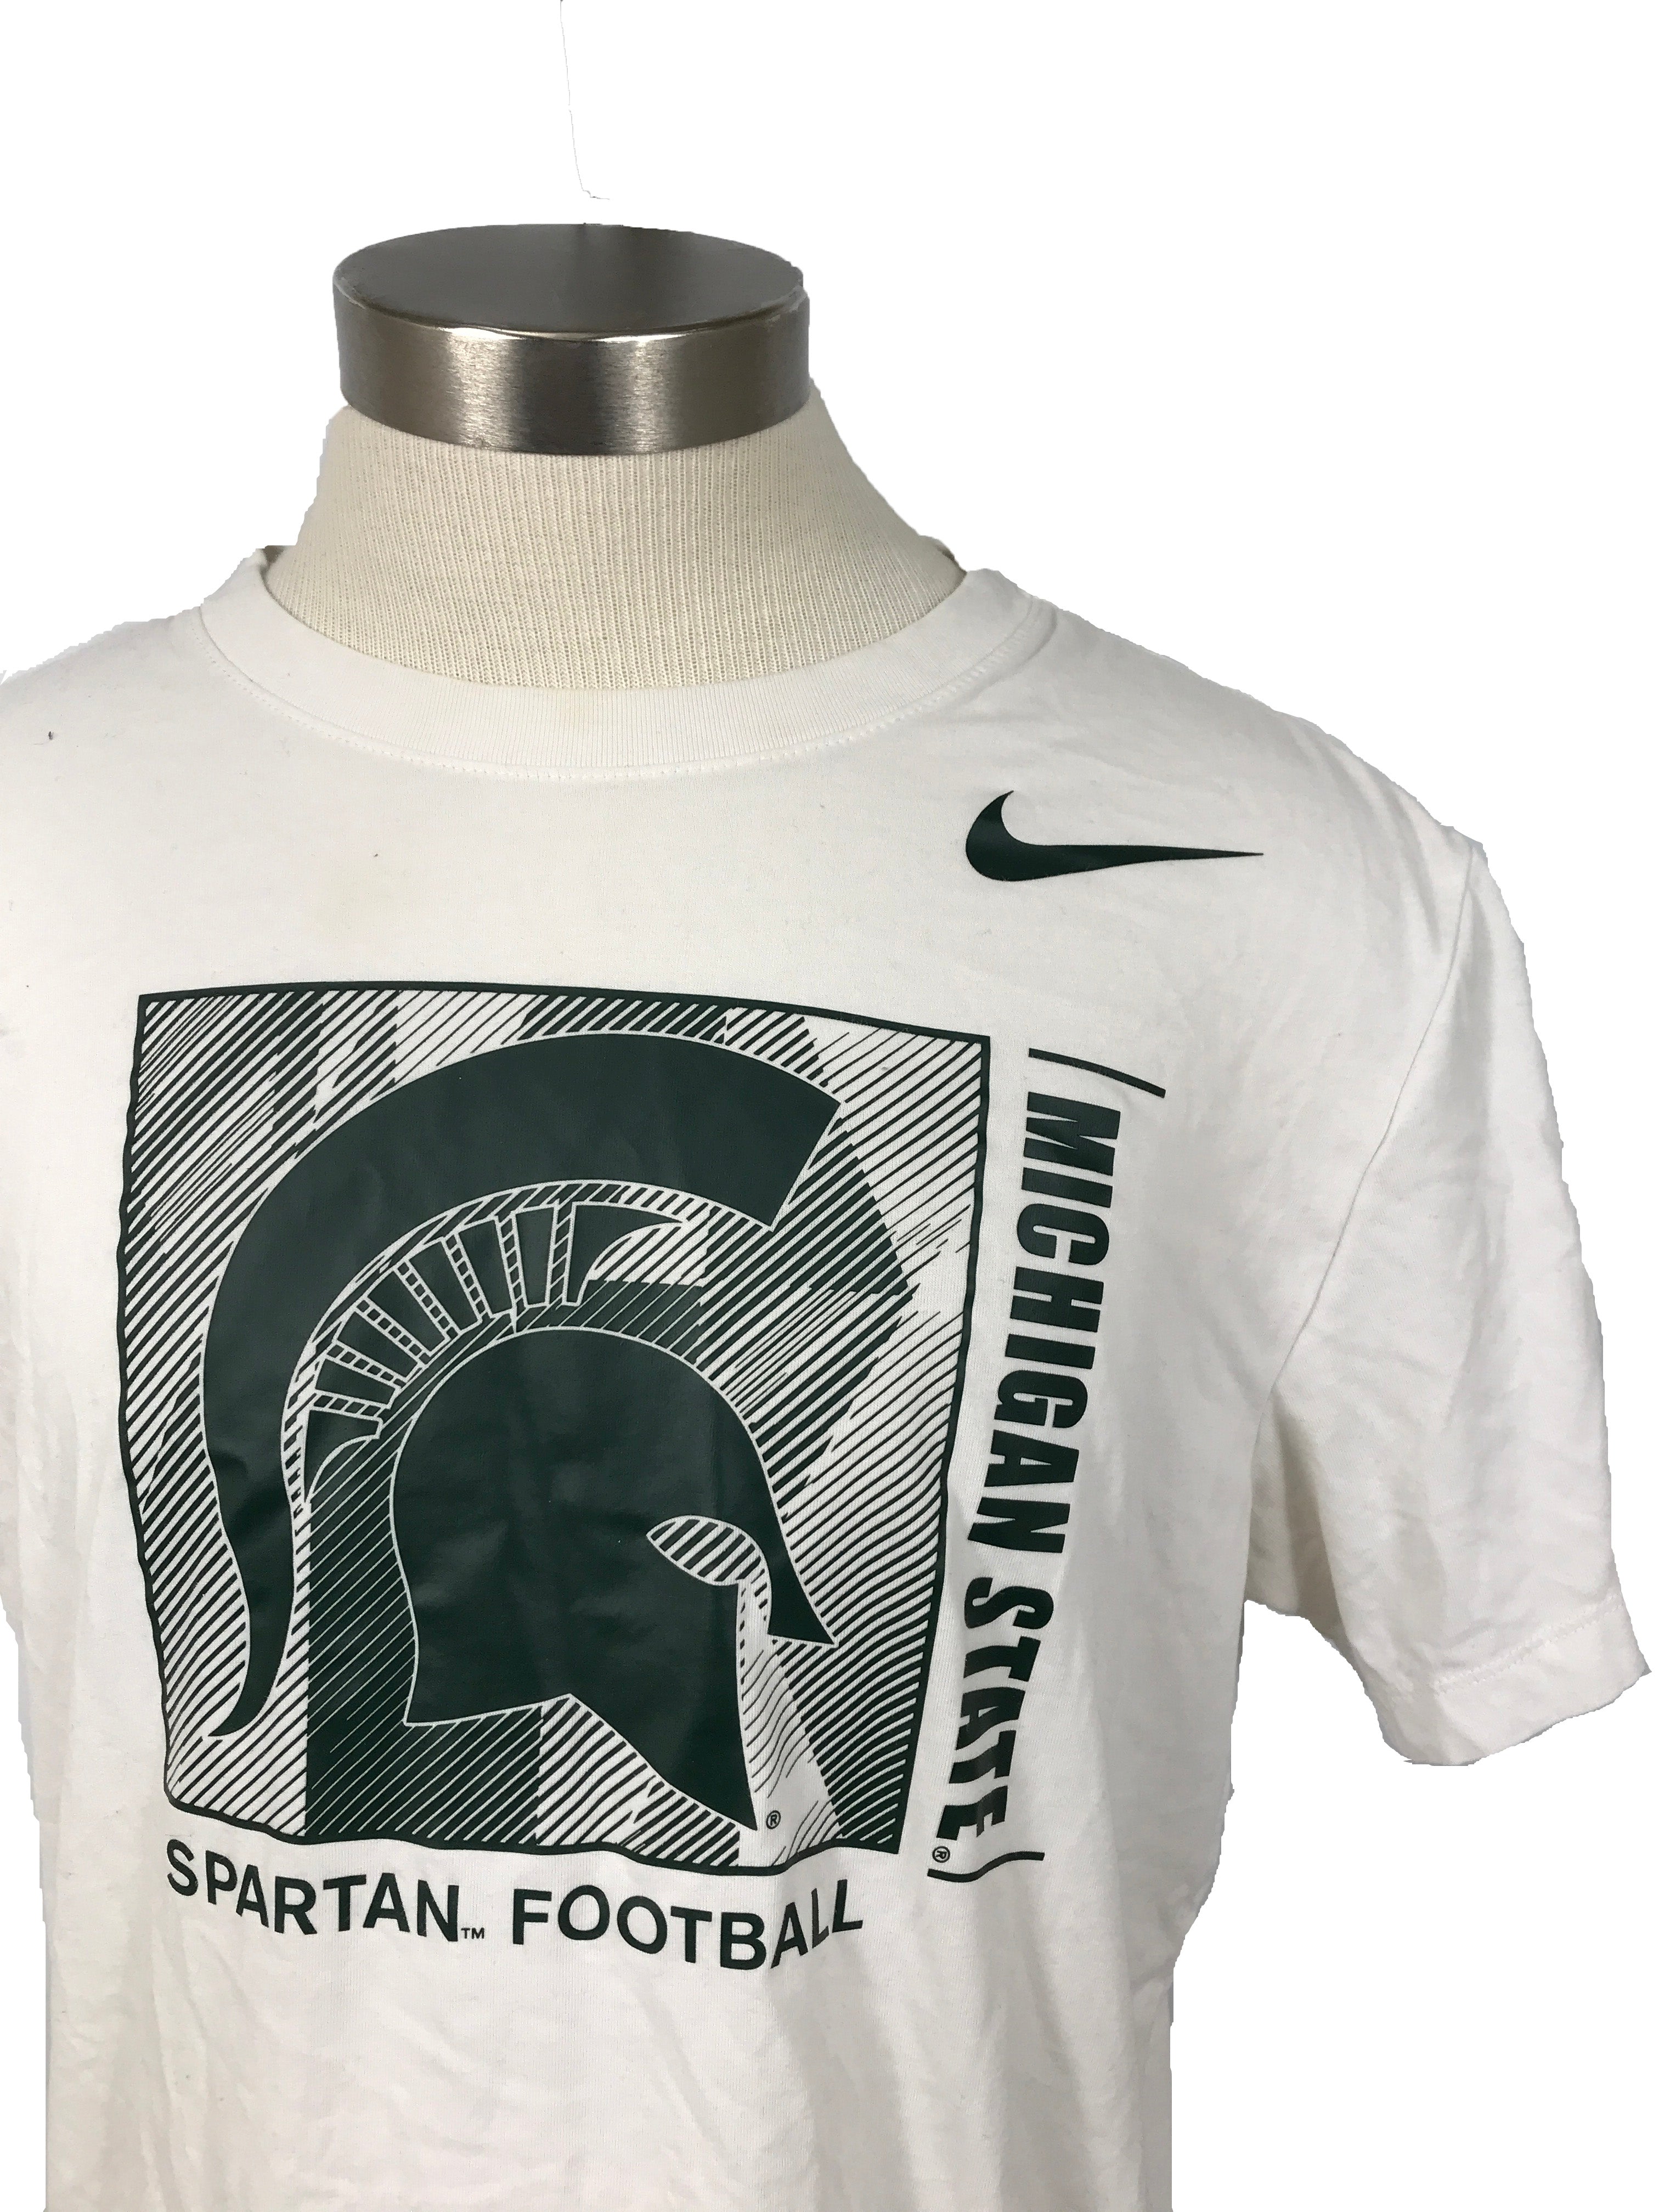 Michigan State University White Football T-Shirt Unisex Size L